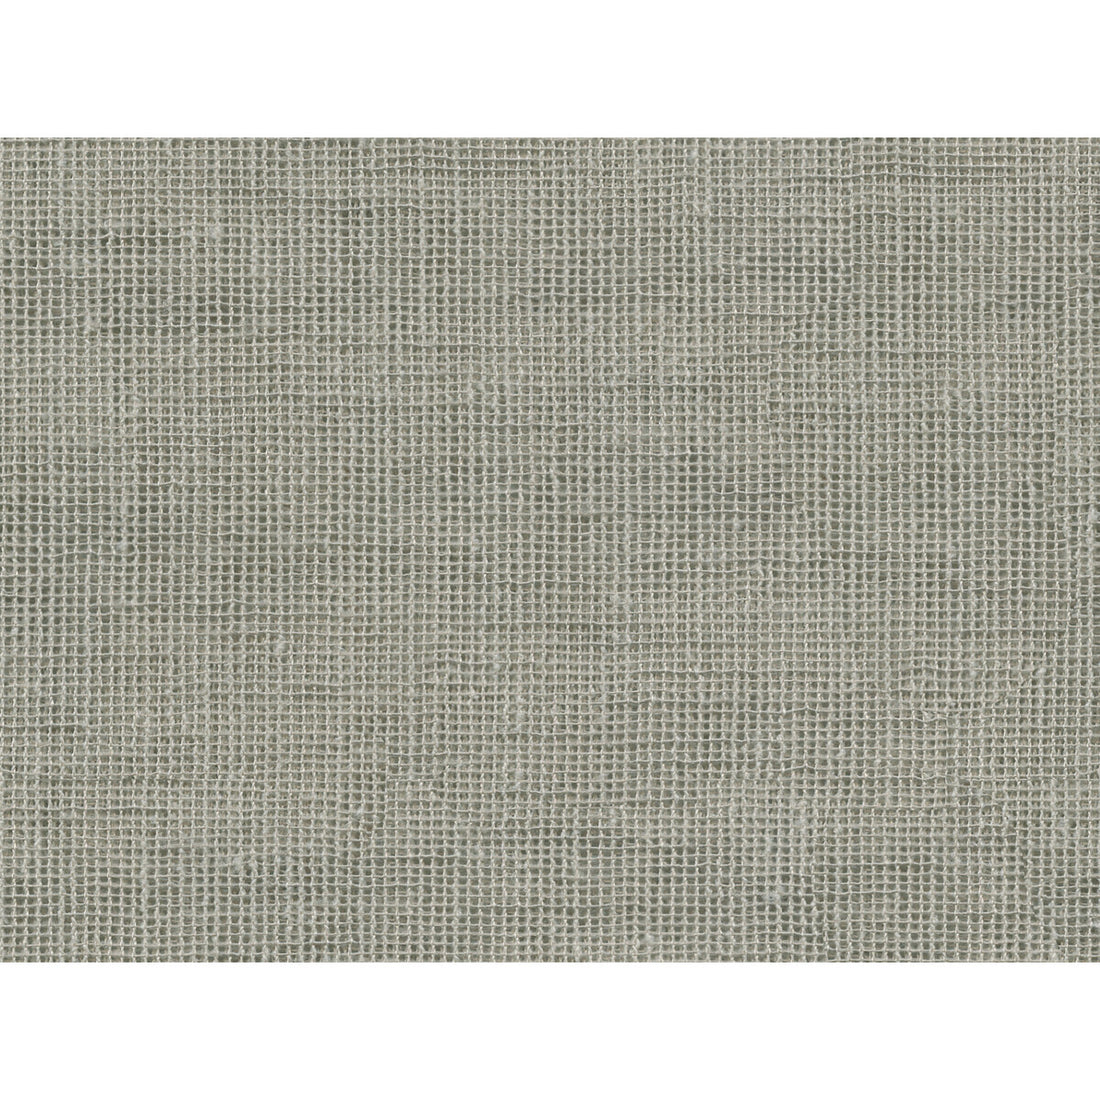 Kravet Basics fabric in 4507-16 color - pattern 4507.16.0 - by Kravet Basics